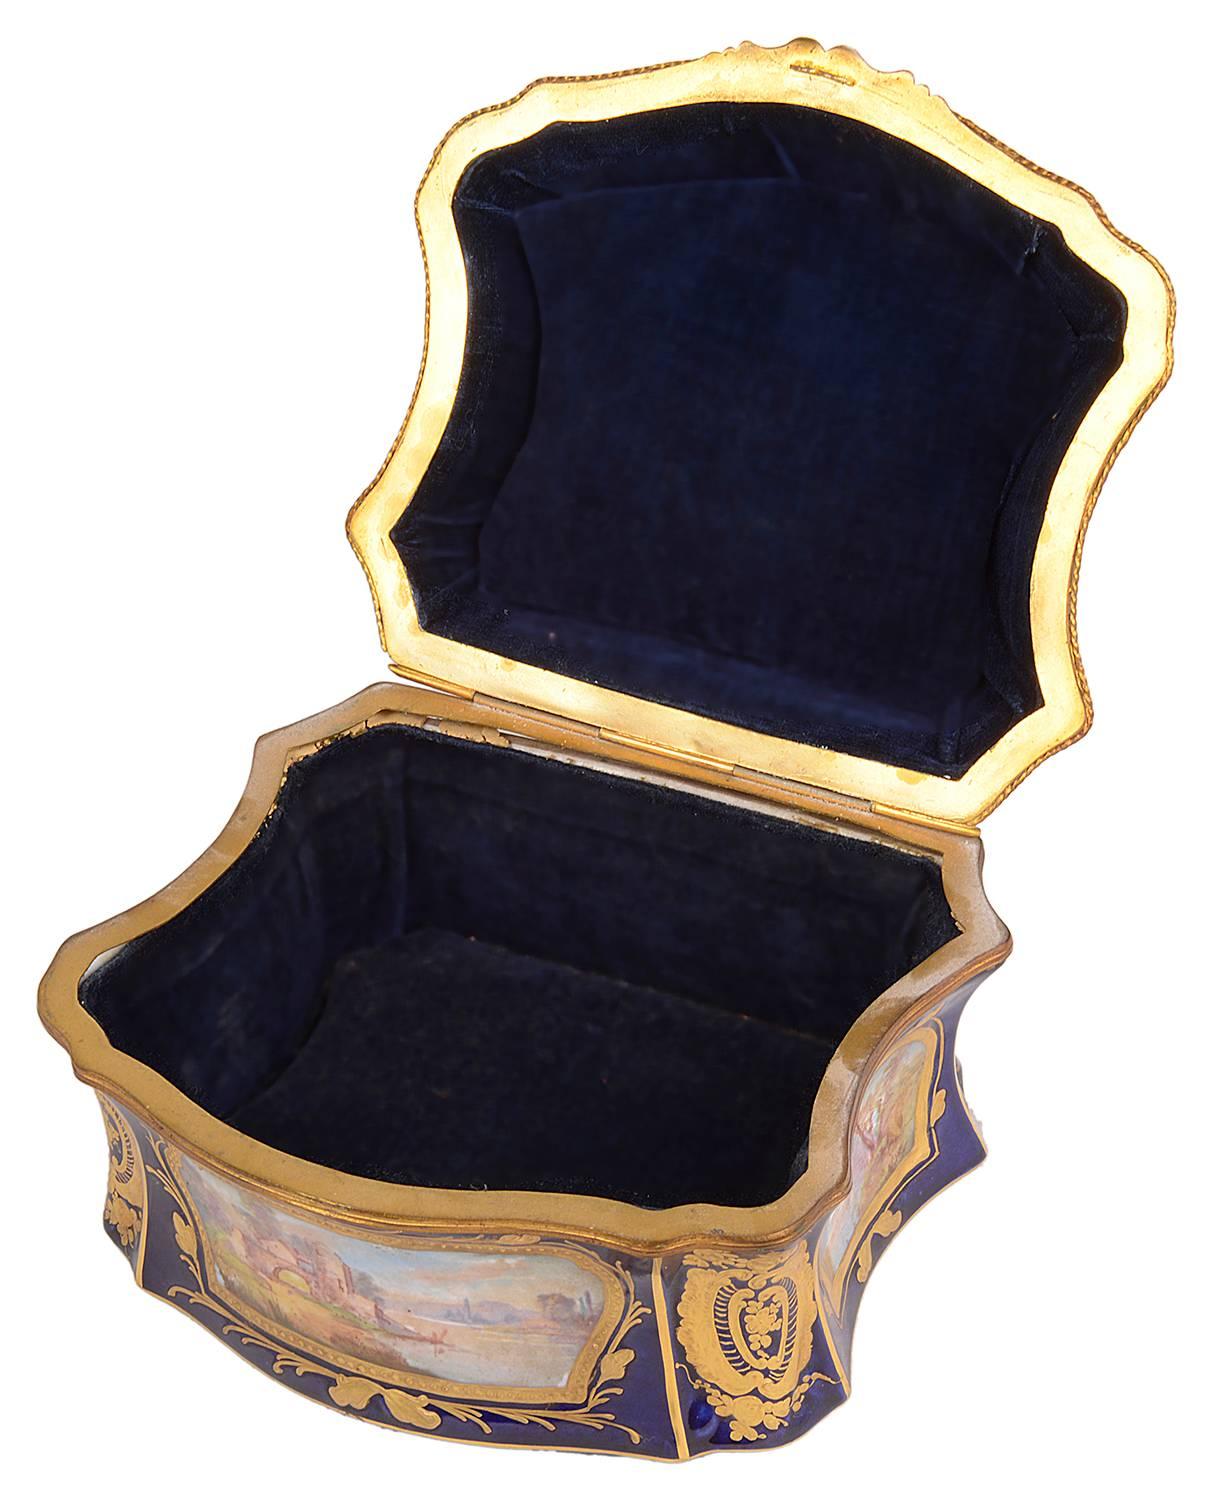 19th Century Sevres Style Porcelain Casket 1